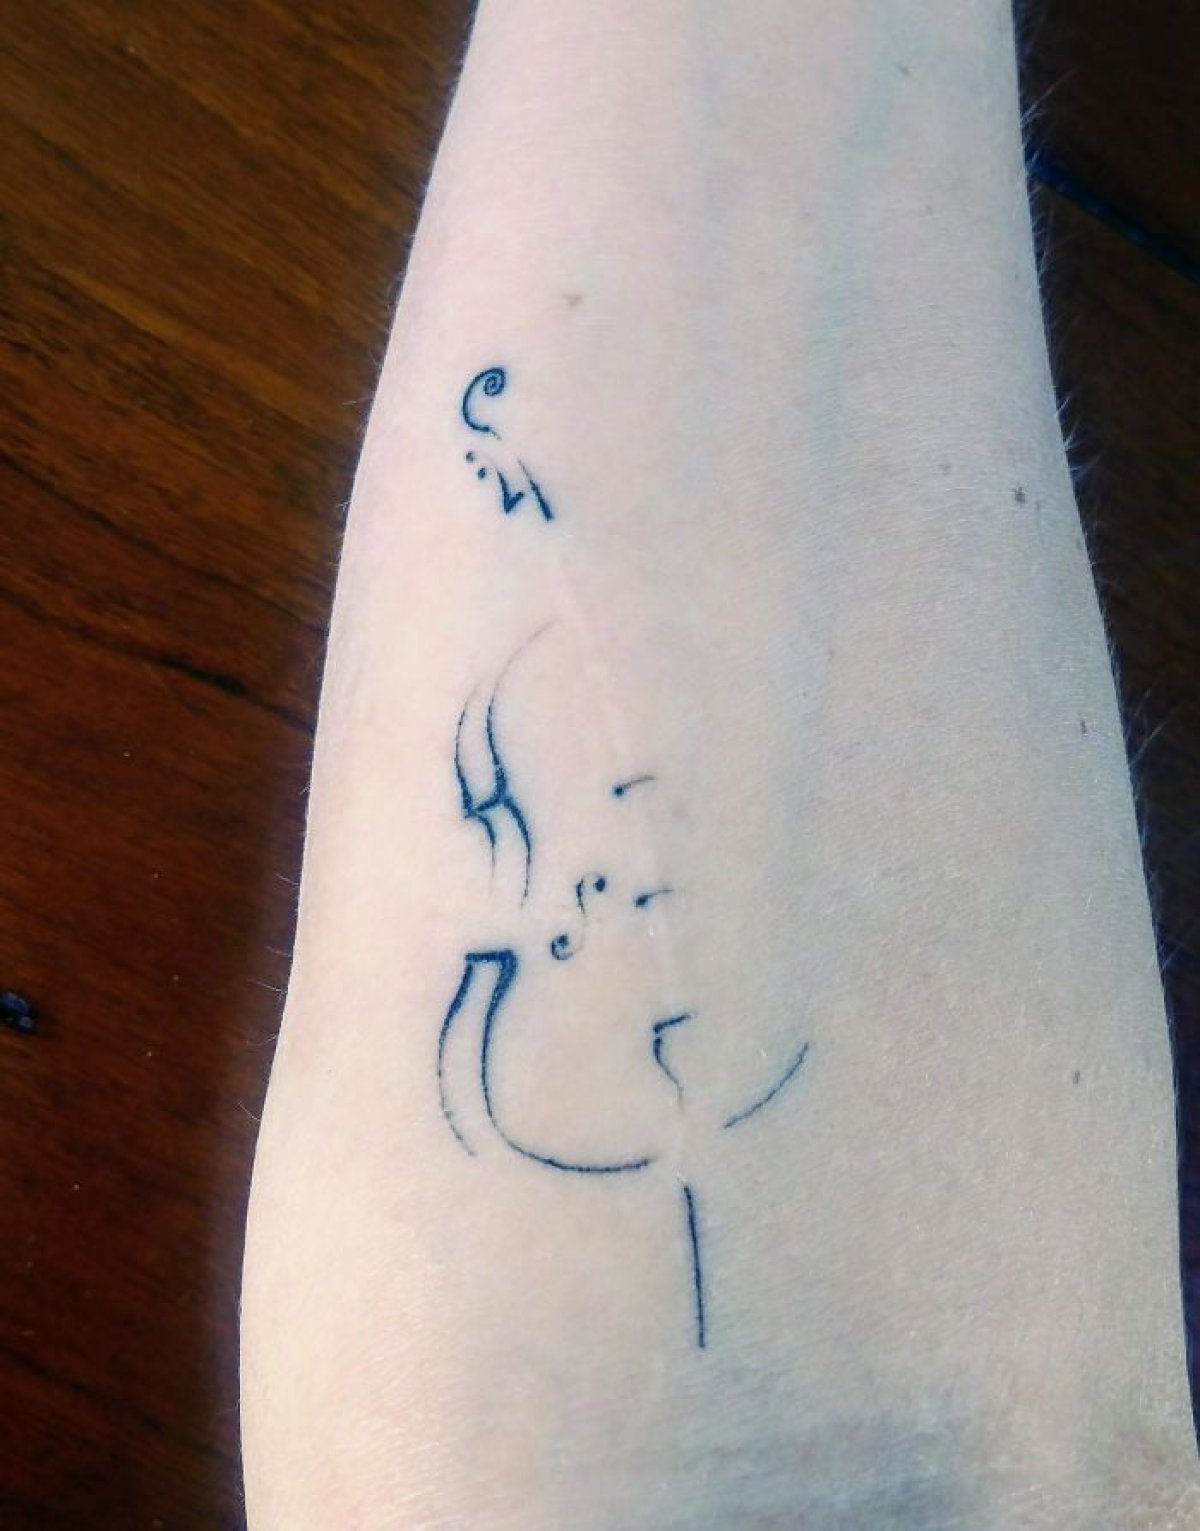 Personas que cubrieron sus cicatrices y marcas de nacimiento con divertidos tatuajes